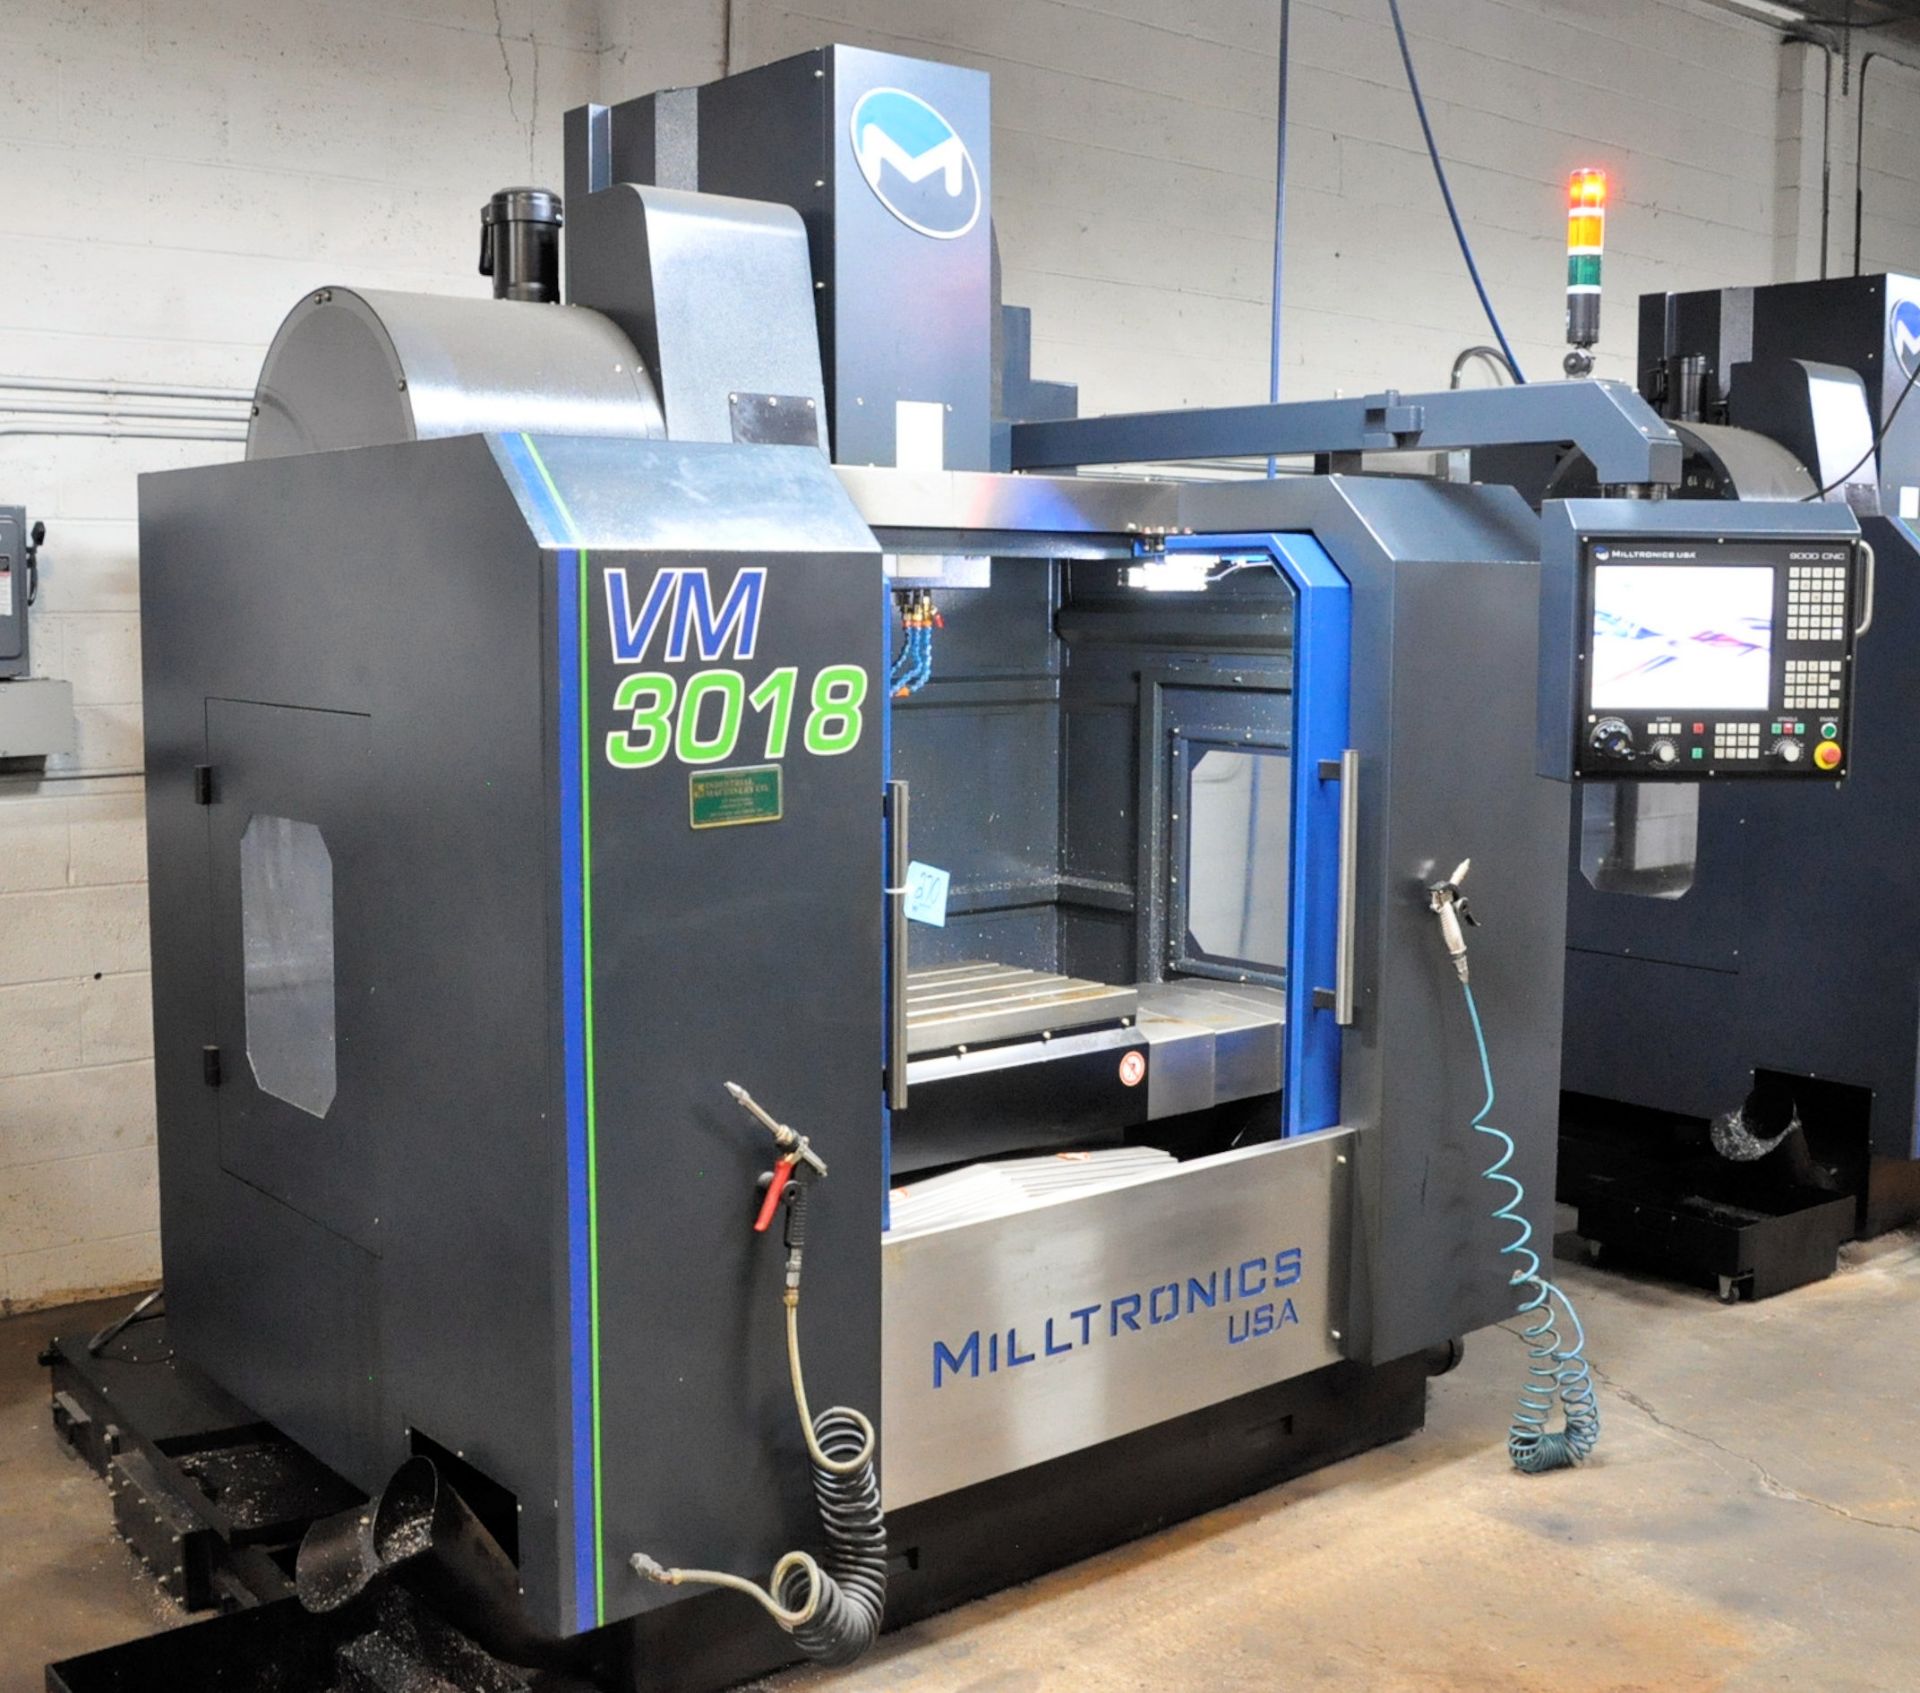 Milltronics VM3018 CNC Vertical Machining Center - Image 3 of 9